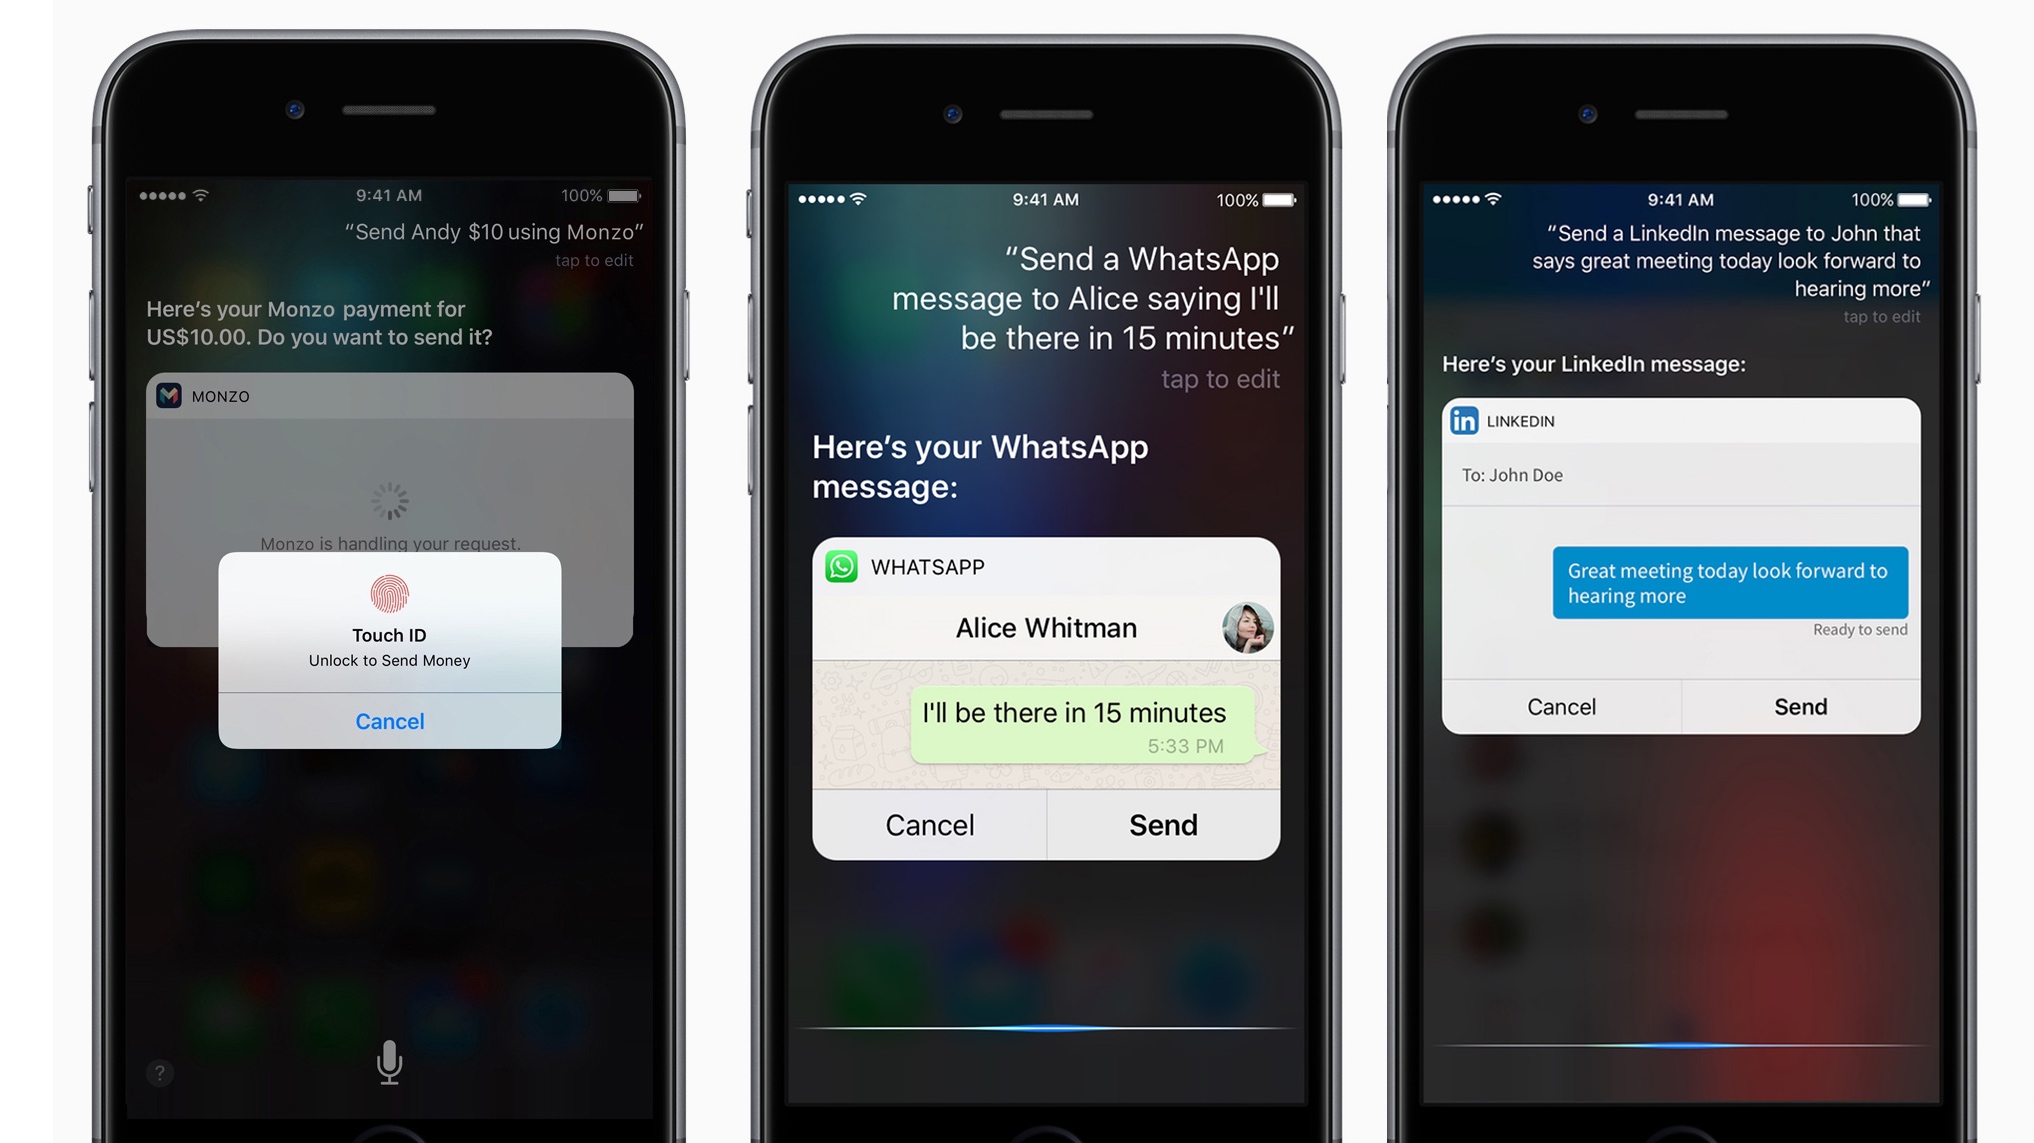 Wants send message. Похожие картинки на Siri из IOS. Сири предлагает отправить сообщение в ватсап. Подбор предпочтений сири. WHATSAPP send to friends.